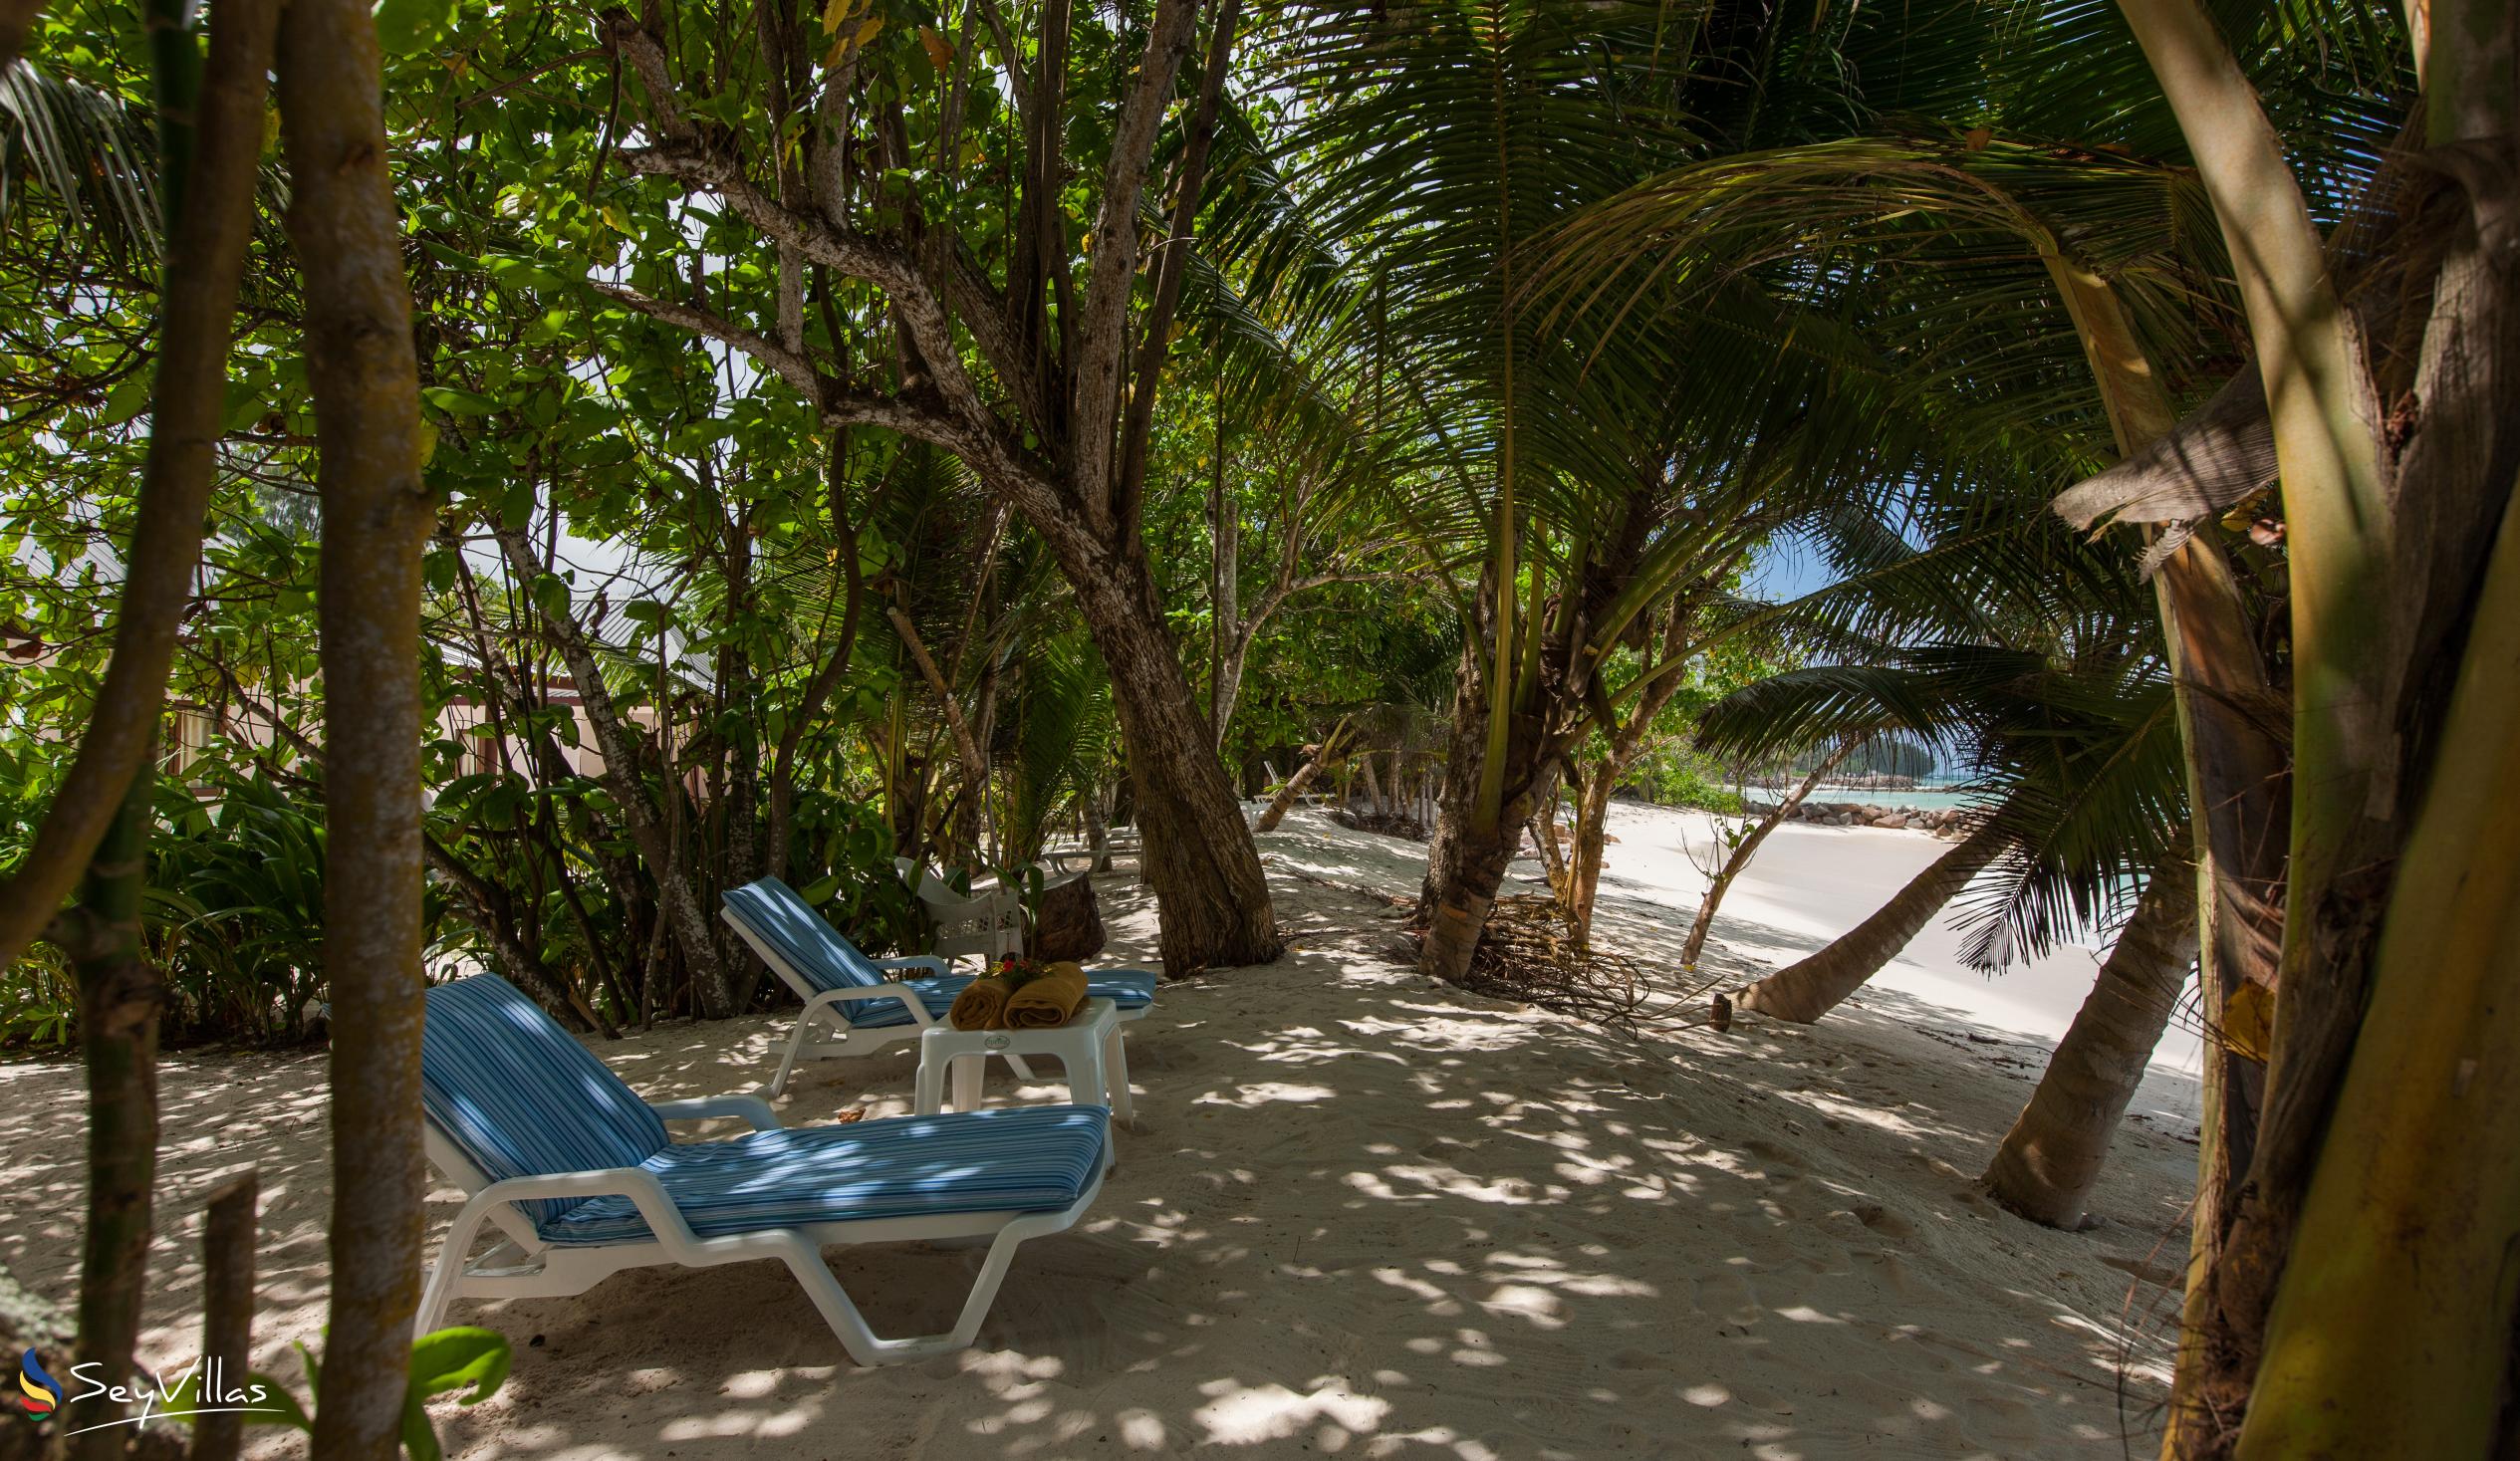 Foto 13: Villa Admiral - Aussenbereich - Praslin (Seychellen)